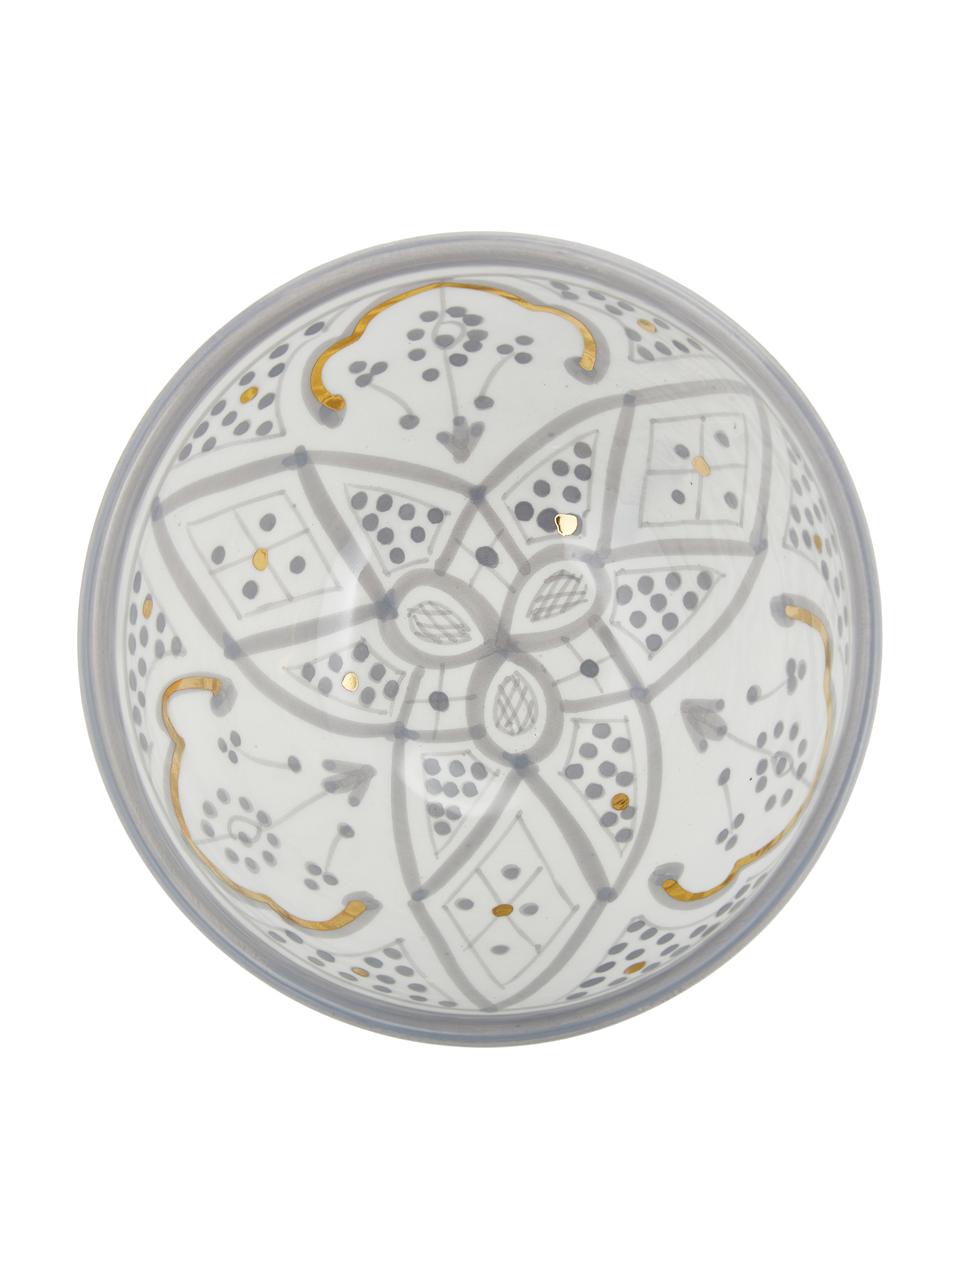 Handgemaakte Marokkaanse schalen Beldi met goudkleurige rand, Ø 15 cm, Keramiek, Lichtgrijs, crèmekleurig, goudkleurig, Ø 15 x H 9 cm